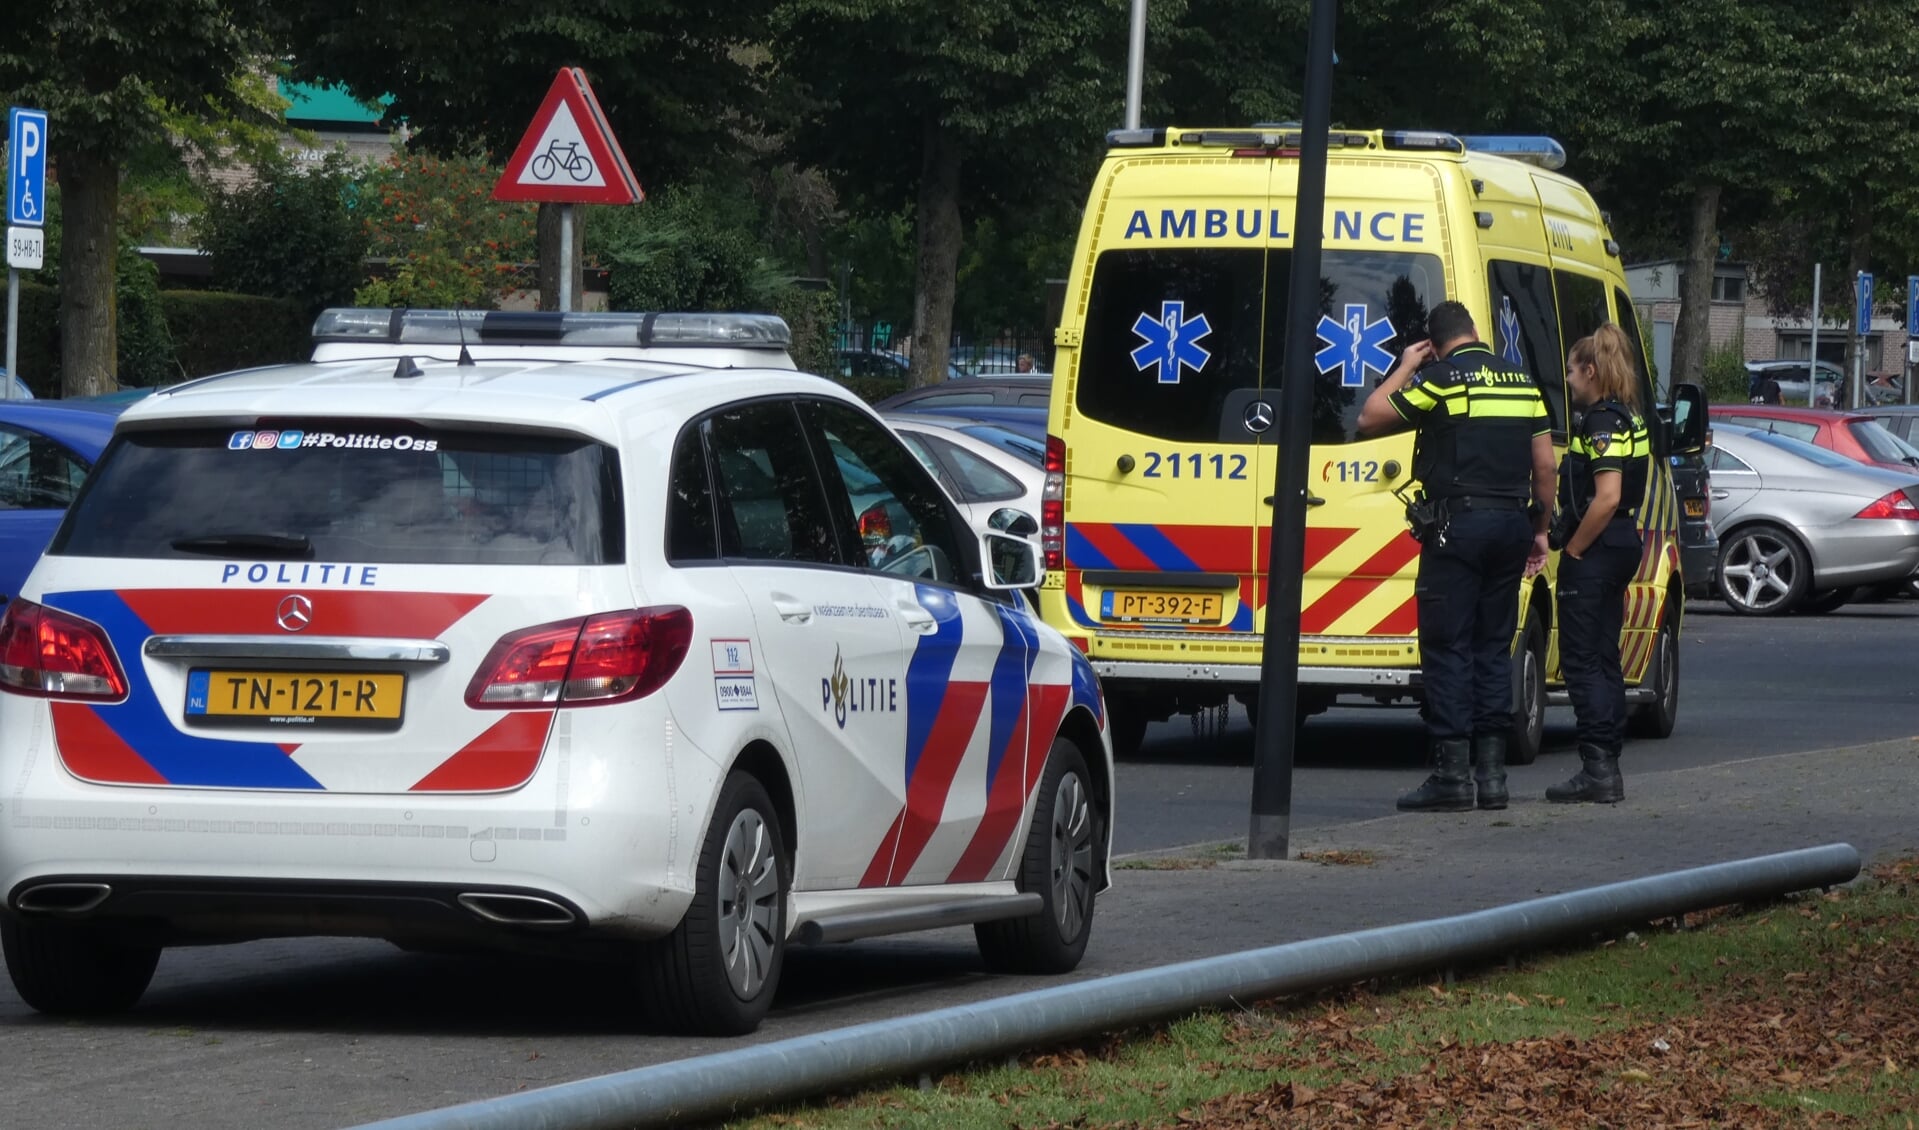 Voetganger gewond bij ongeval op Schaepmanlaan. (Foto: Thomas)